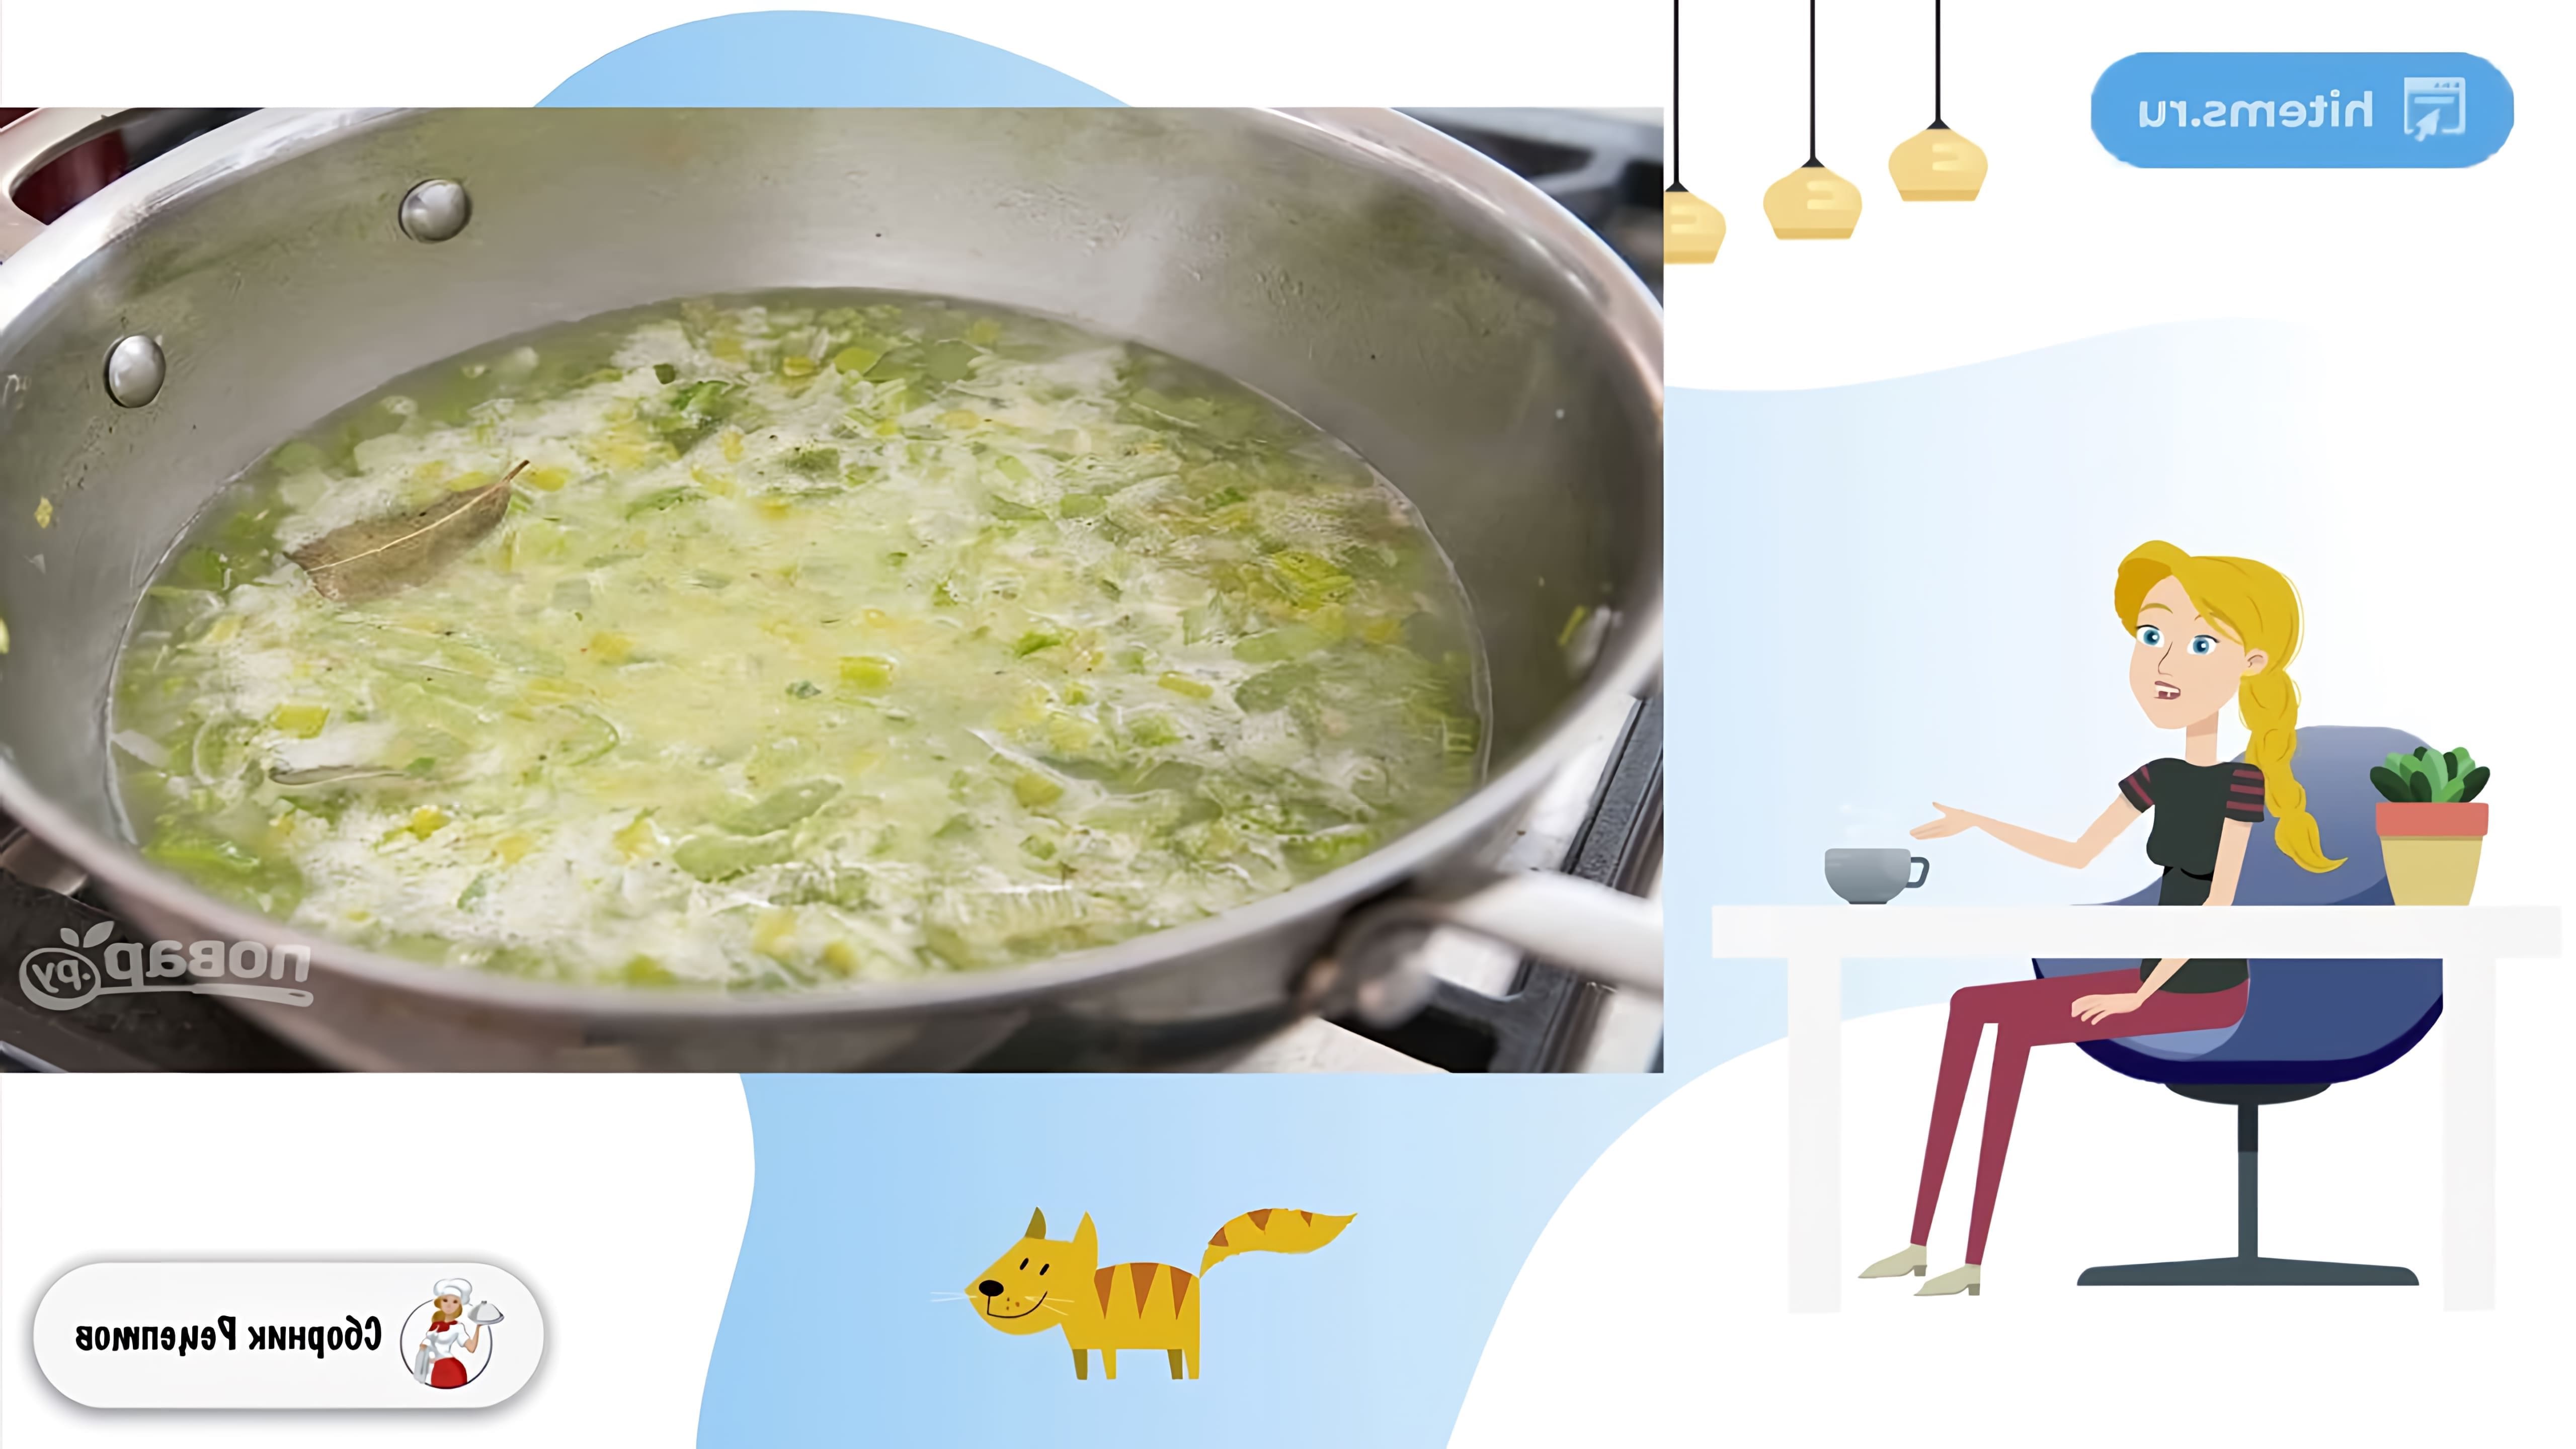 В этом видео демонстрируется рецепт приготовления супа-пюре с сельдереем